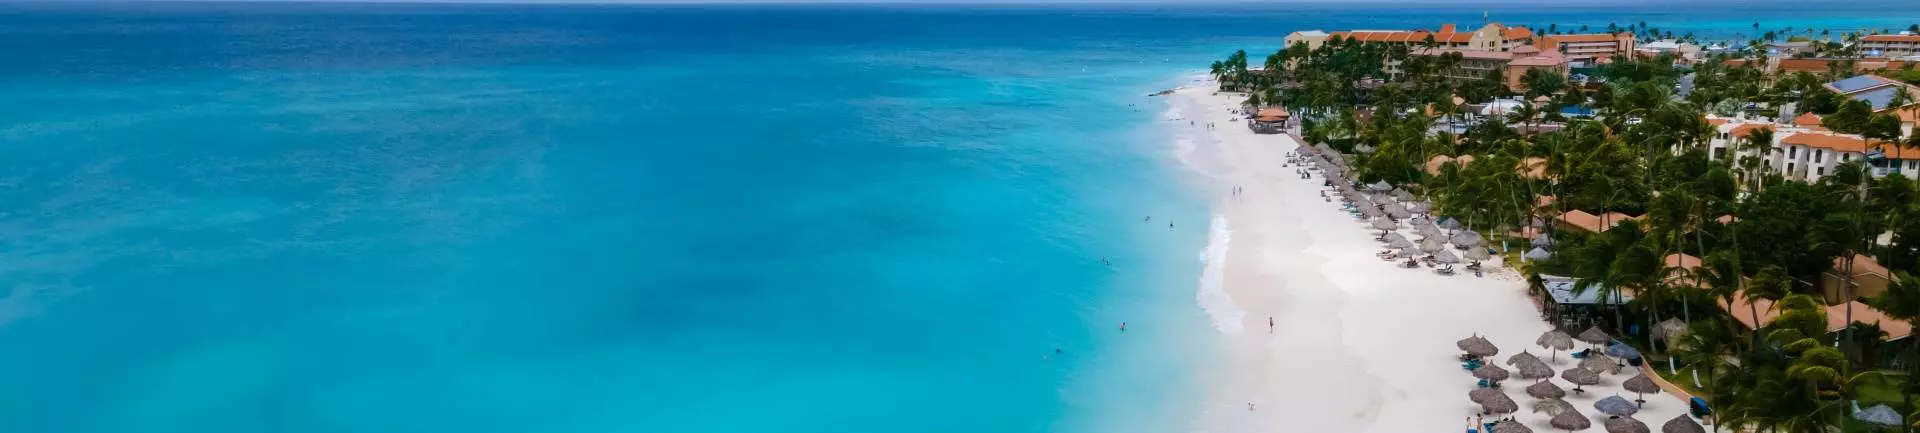 Melhores praias do mundo: confira o top 9